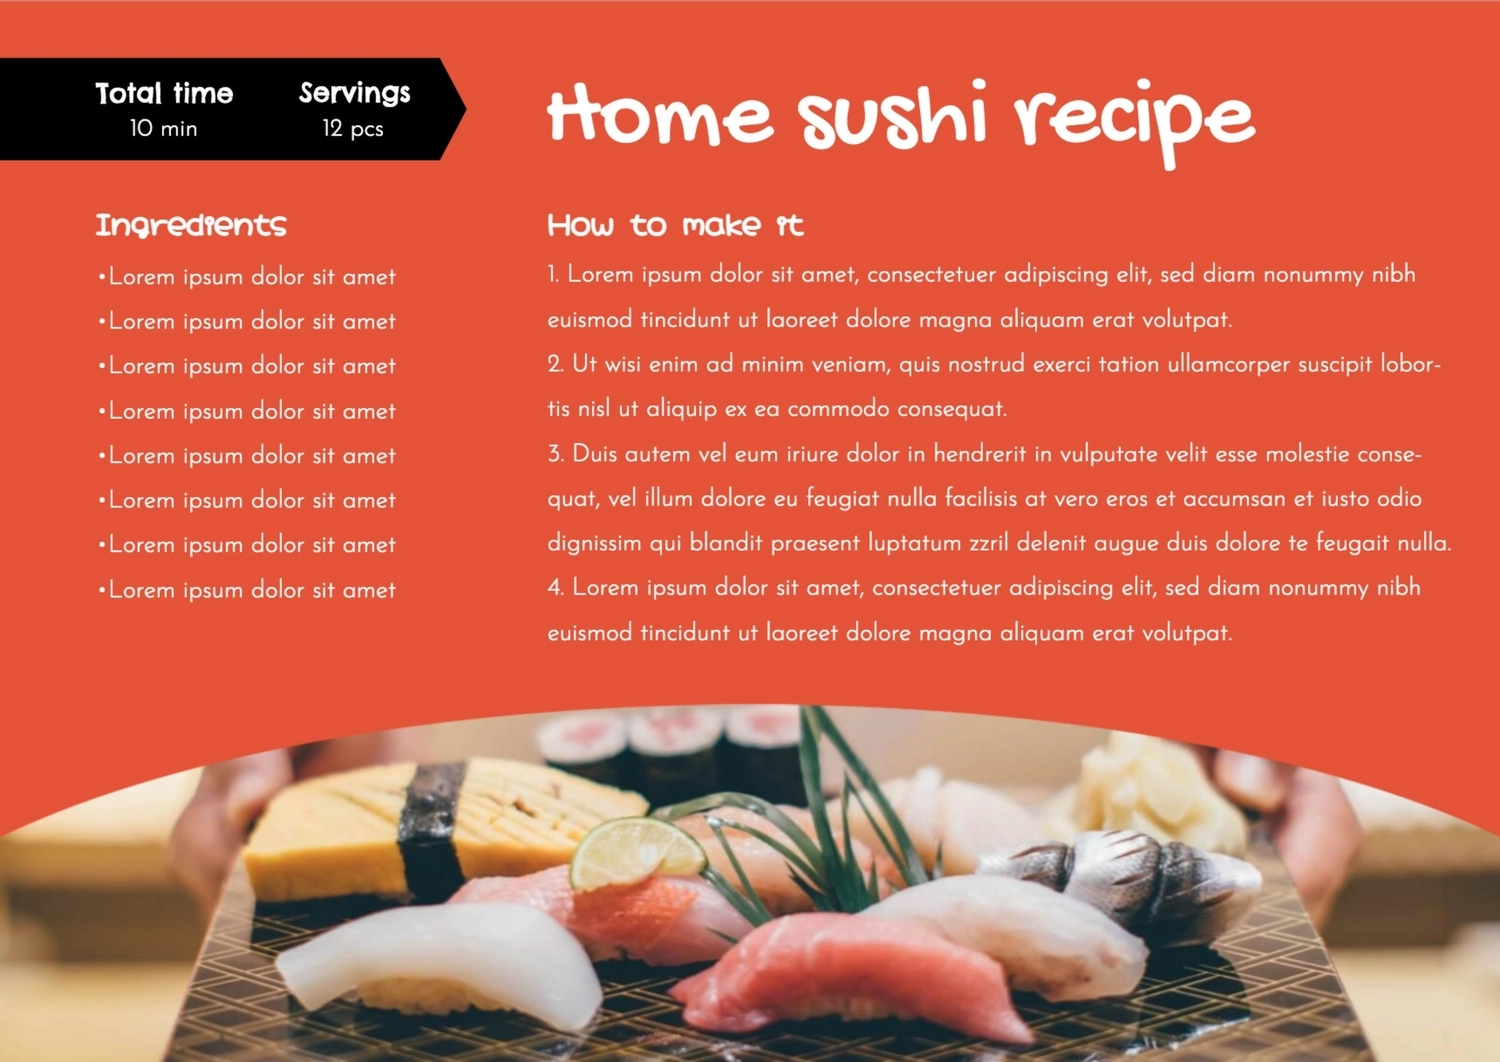 お家でお寿司, 美味しい, レシピカード, 作成, レシピカードテンプレート